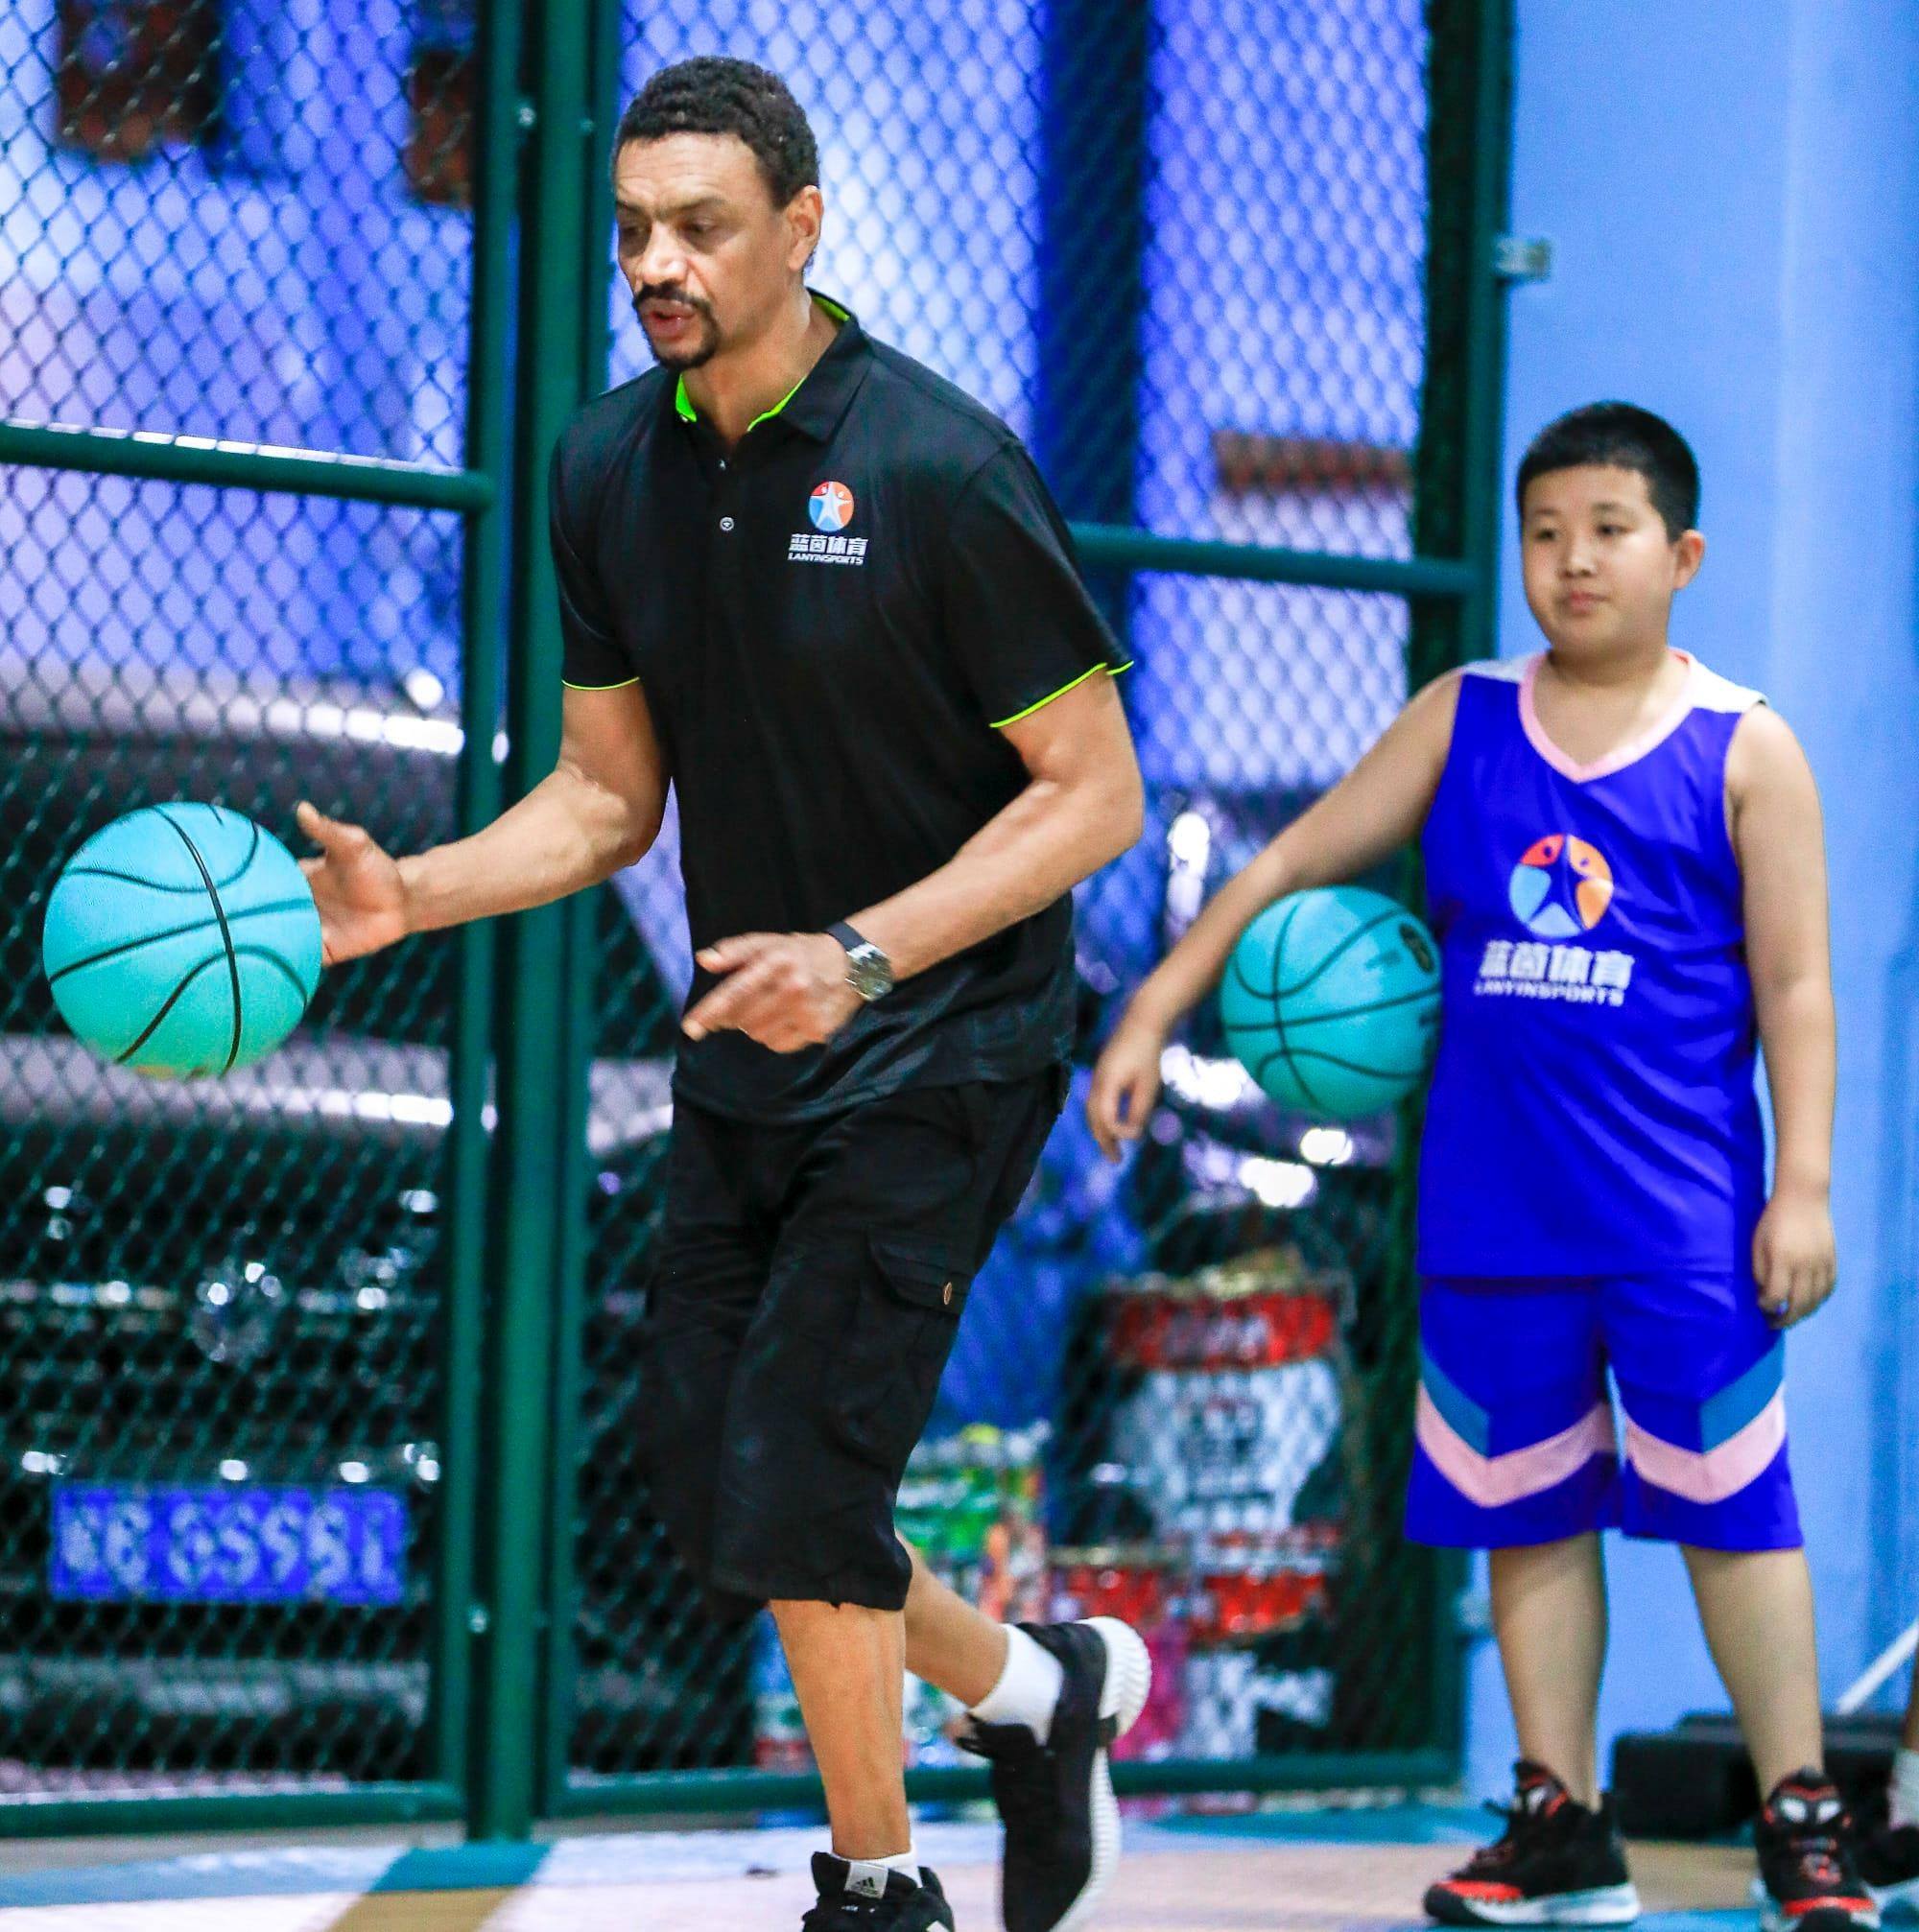 Cabo-verdiano leva basquetebol até à China sem abandonar cenário tropical